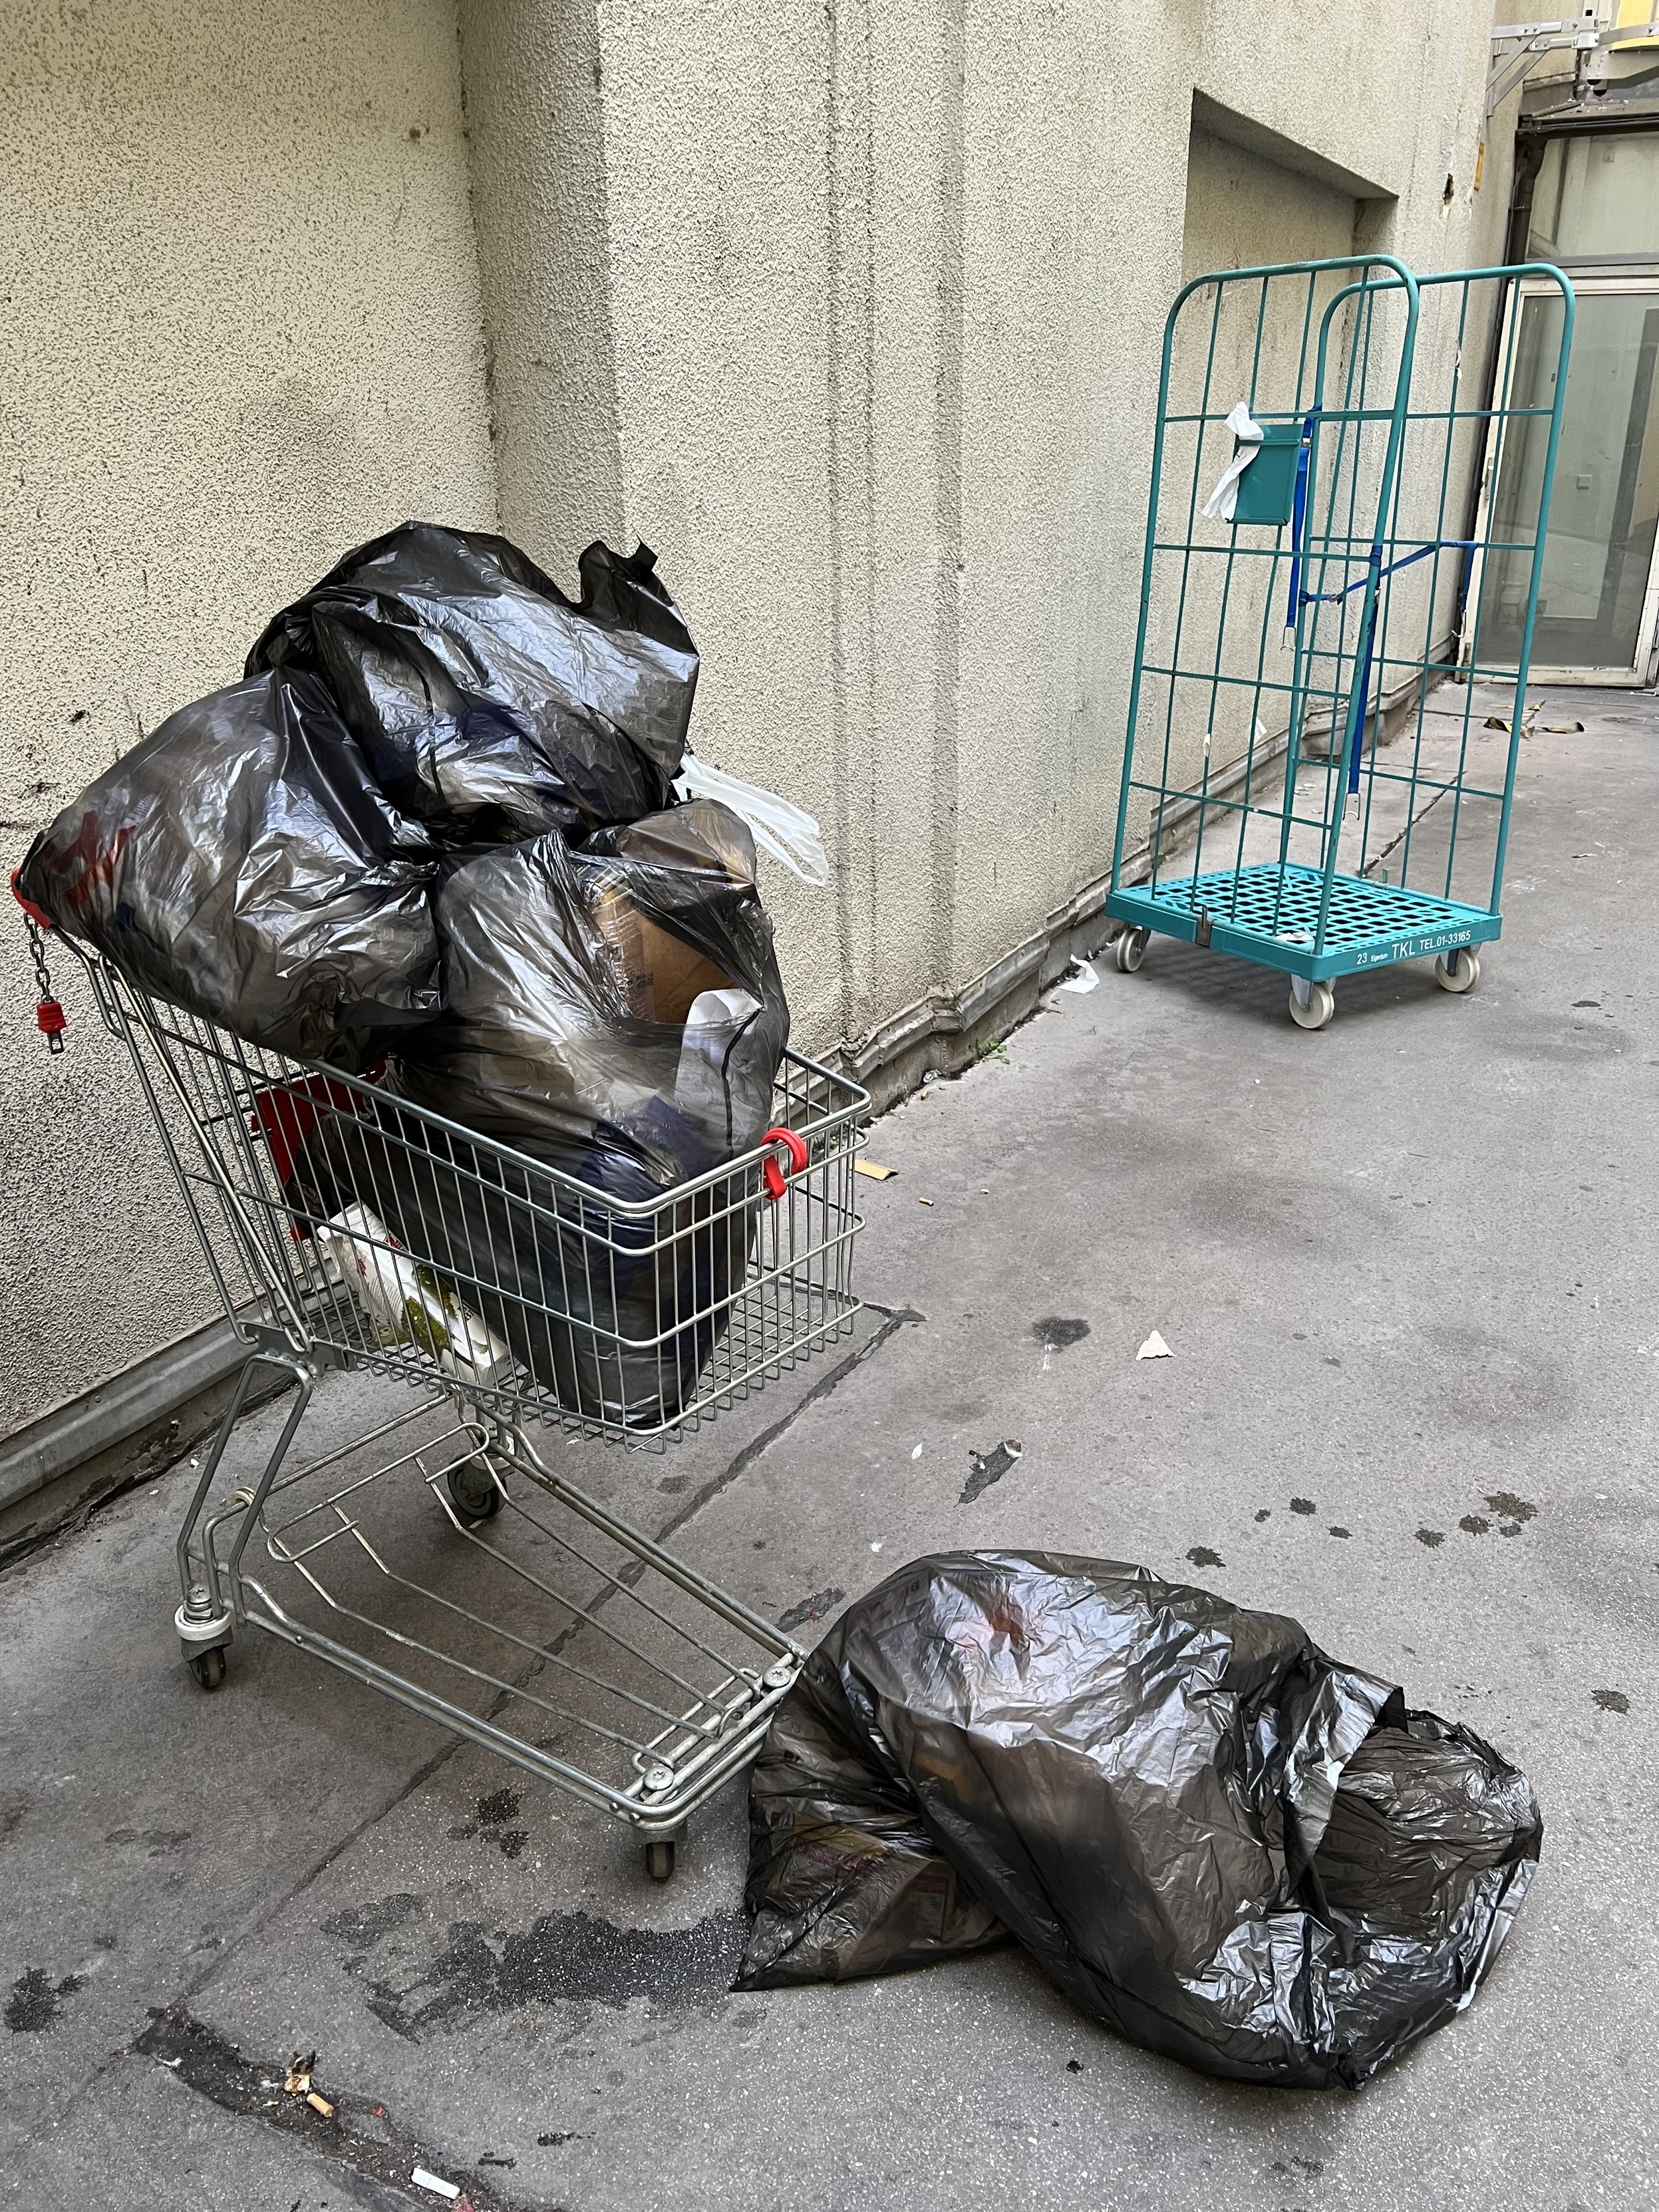 Ein Einkaufswagen voller schwarzer Müllsäcke steht neben einer grünen Metallkarre in einer engen Gasse. Ein zusätzlicher Müllsack liegt auf dem Boden neben dem Einkaufswagen.